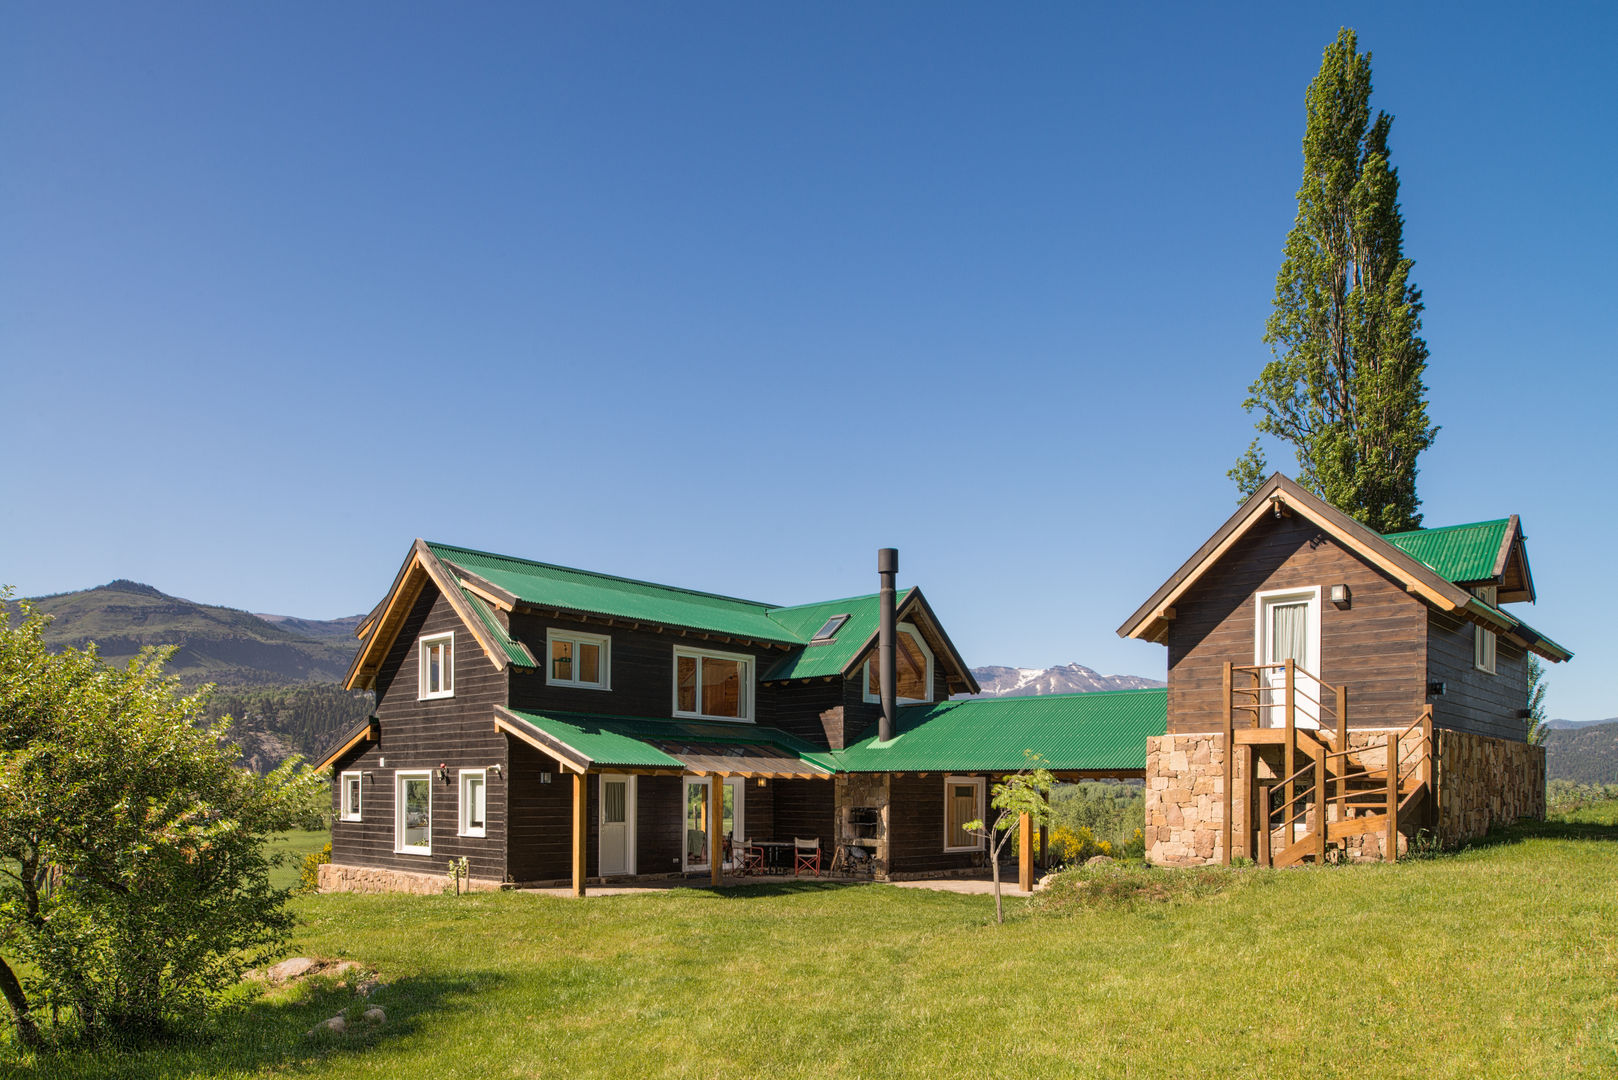 Casa de madera en San Martin de los Andes, Patagonia Log Homes - Arquitectos - Neuquén Patagonia Log Homes - Arquitectos - Neuquén 목조 주택 솔리드 우드 멀티 컬러